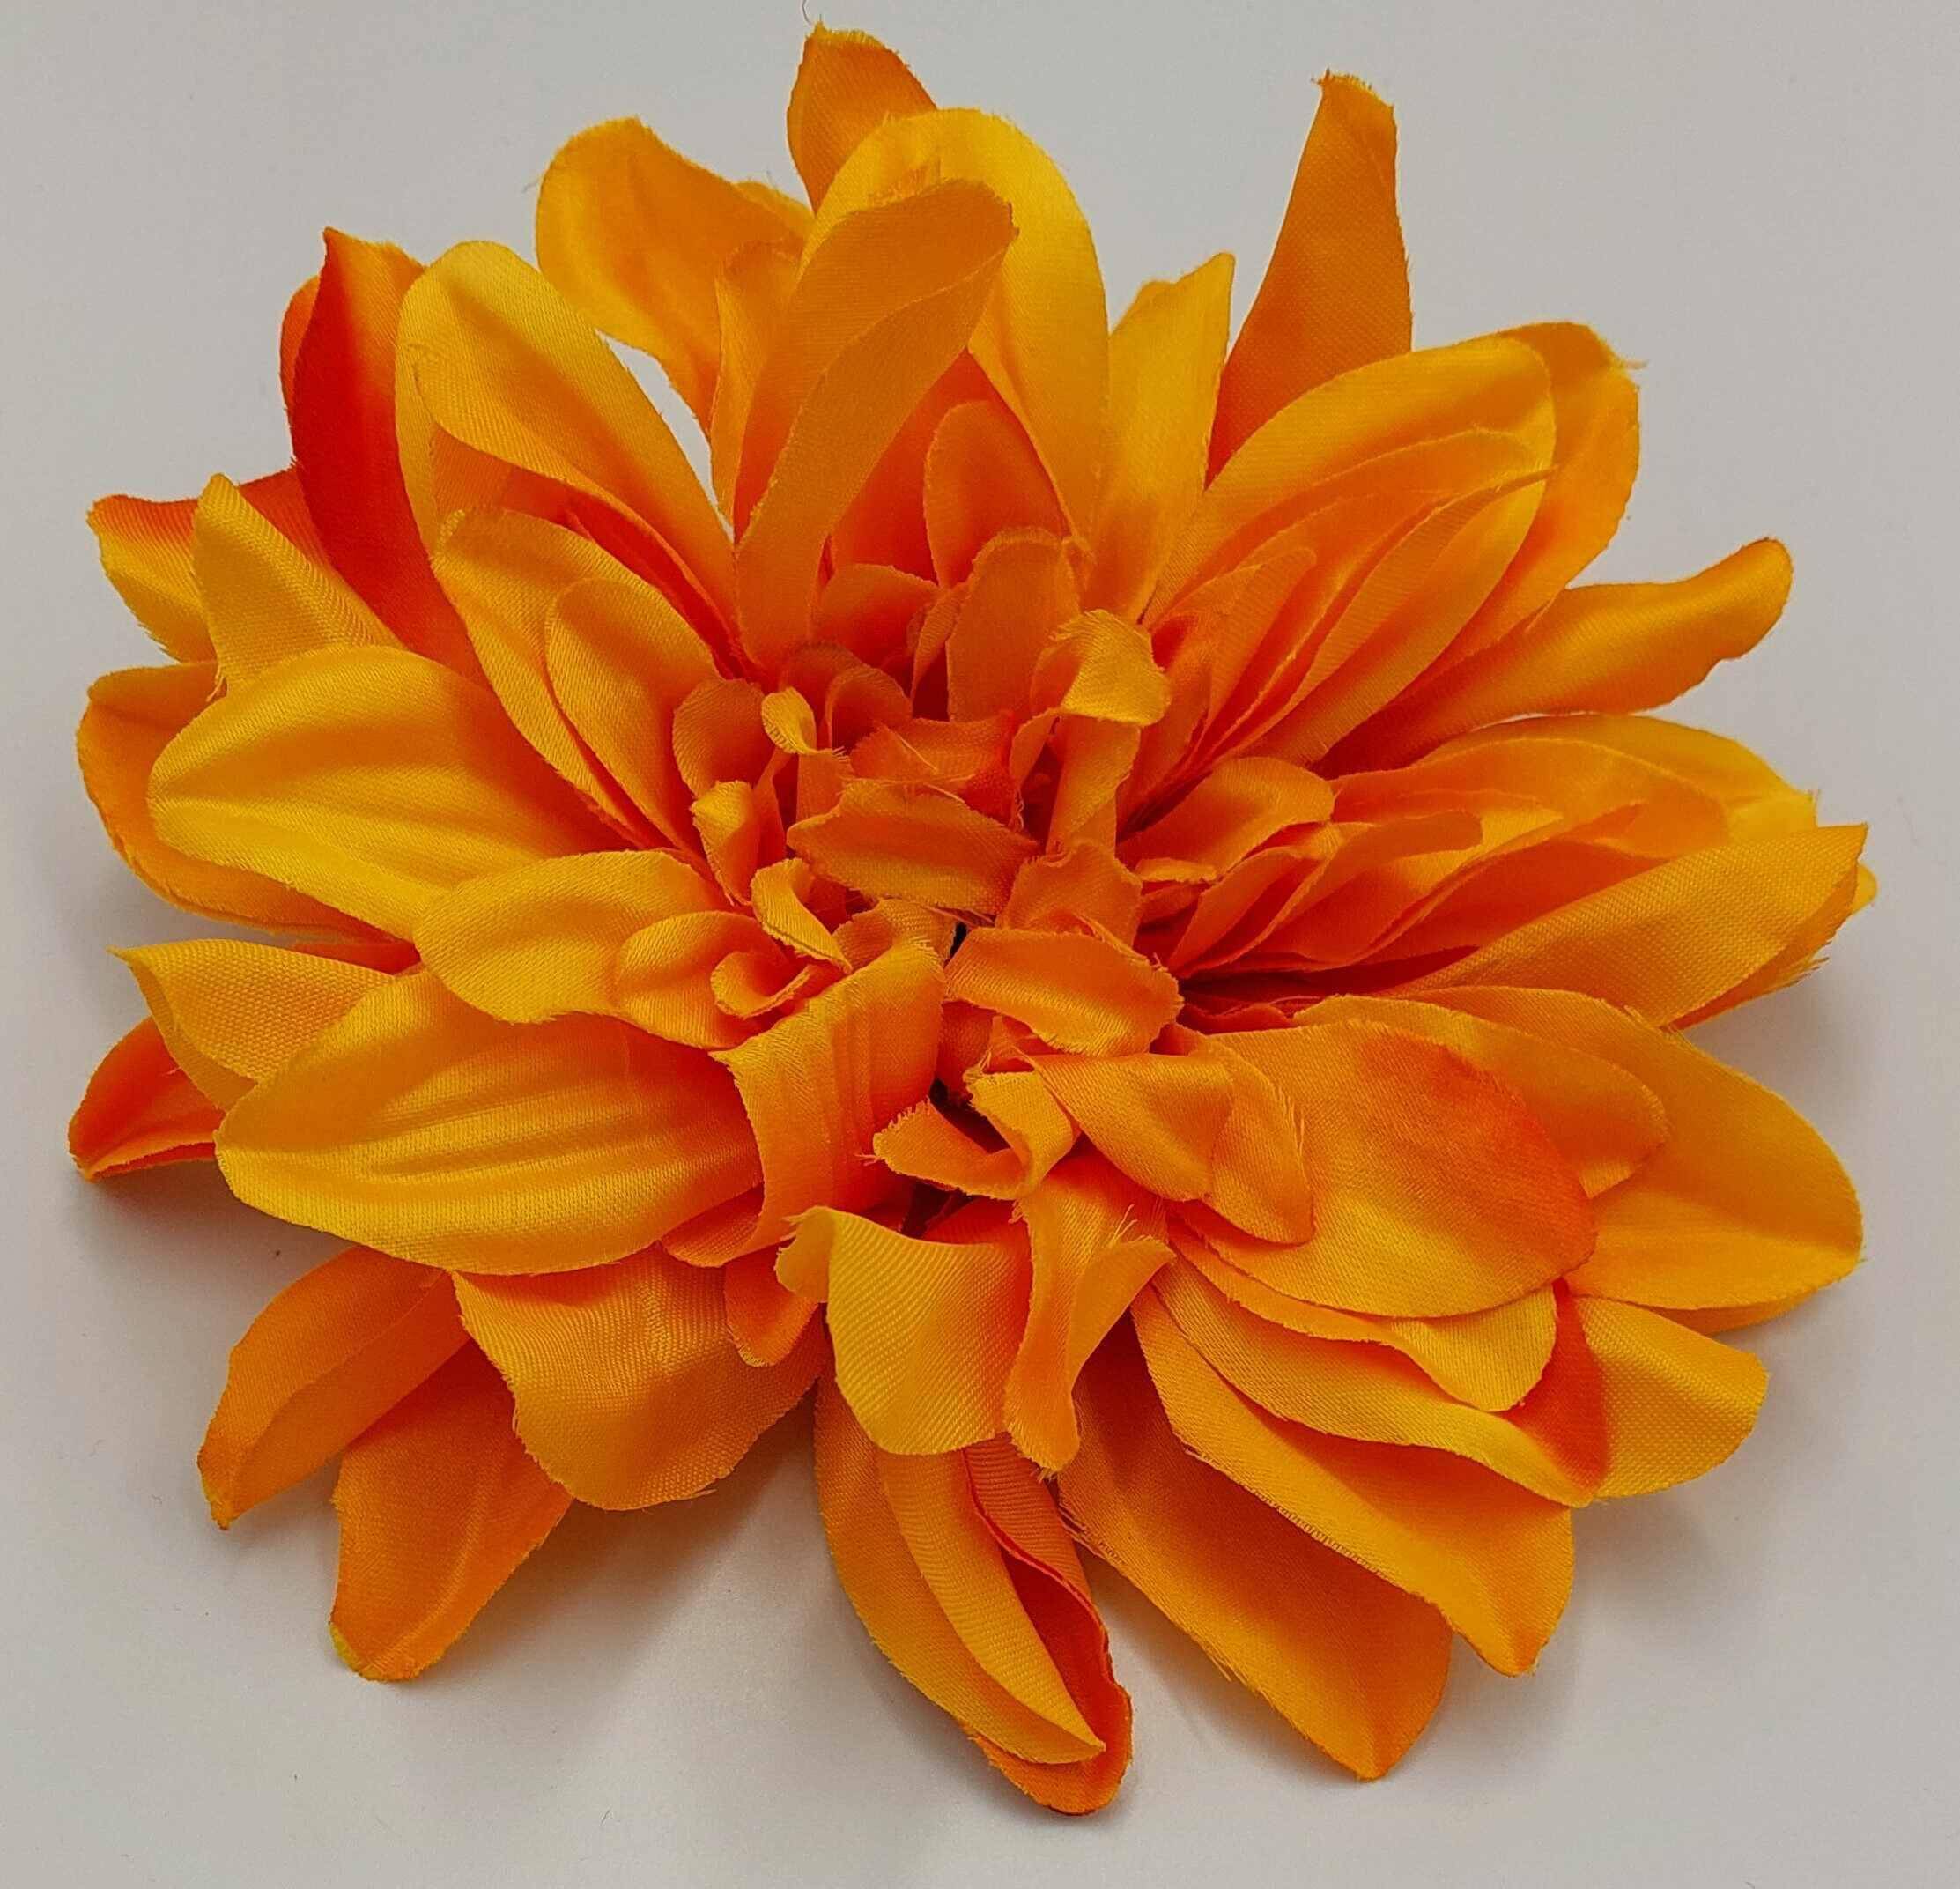 Kwiat Wyrobowy Dalia W149-41 Orange/ Red